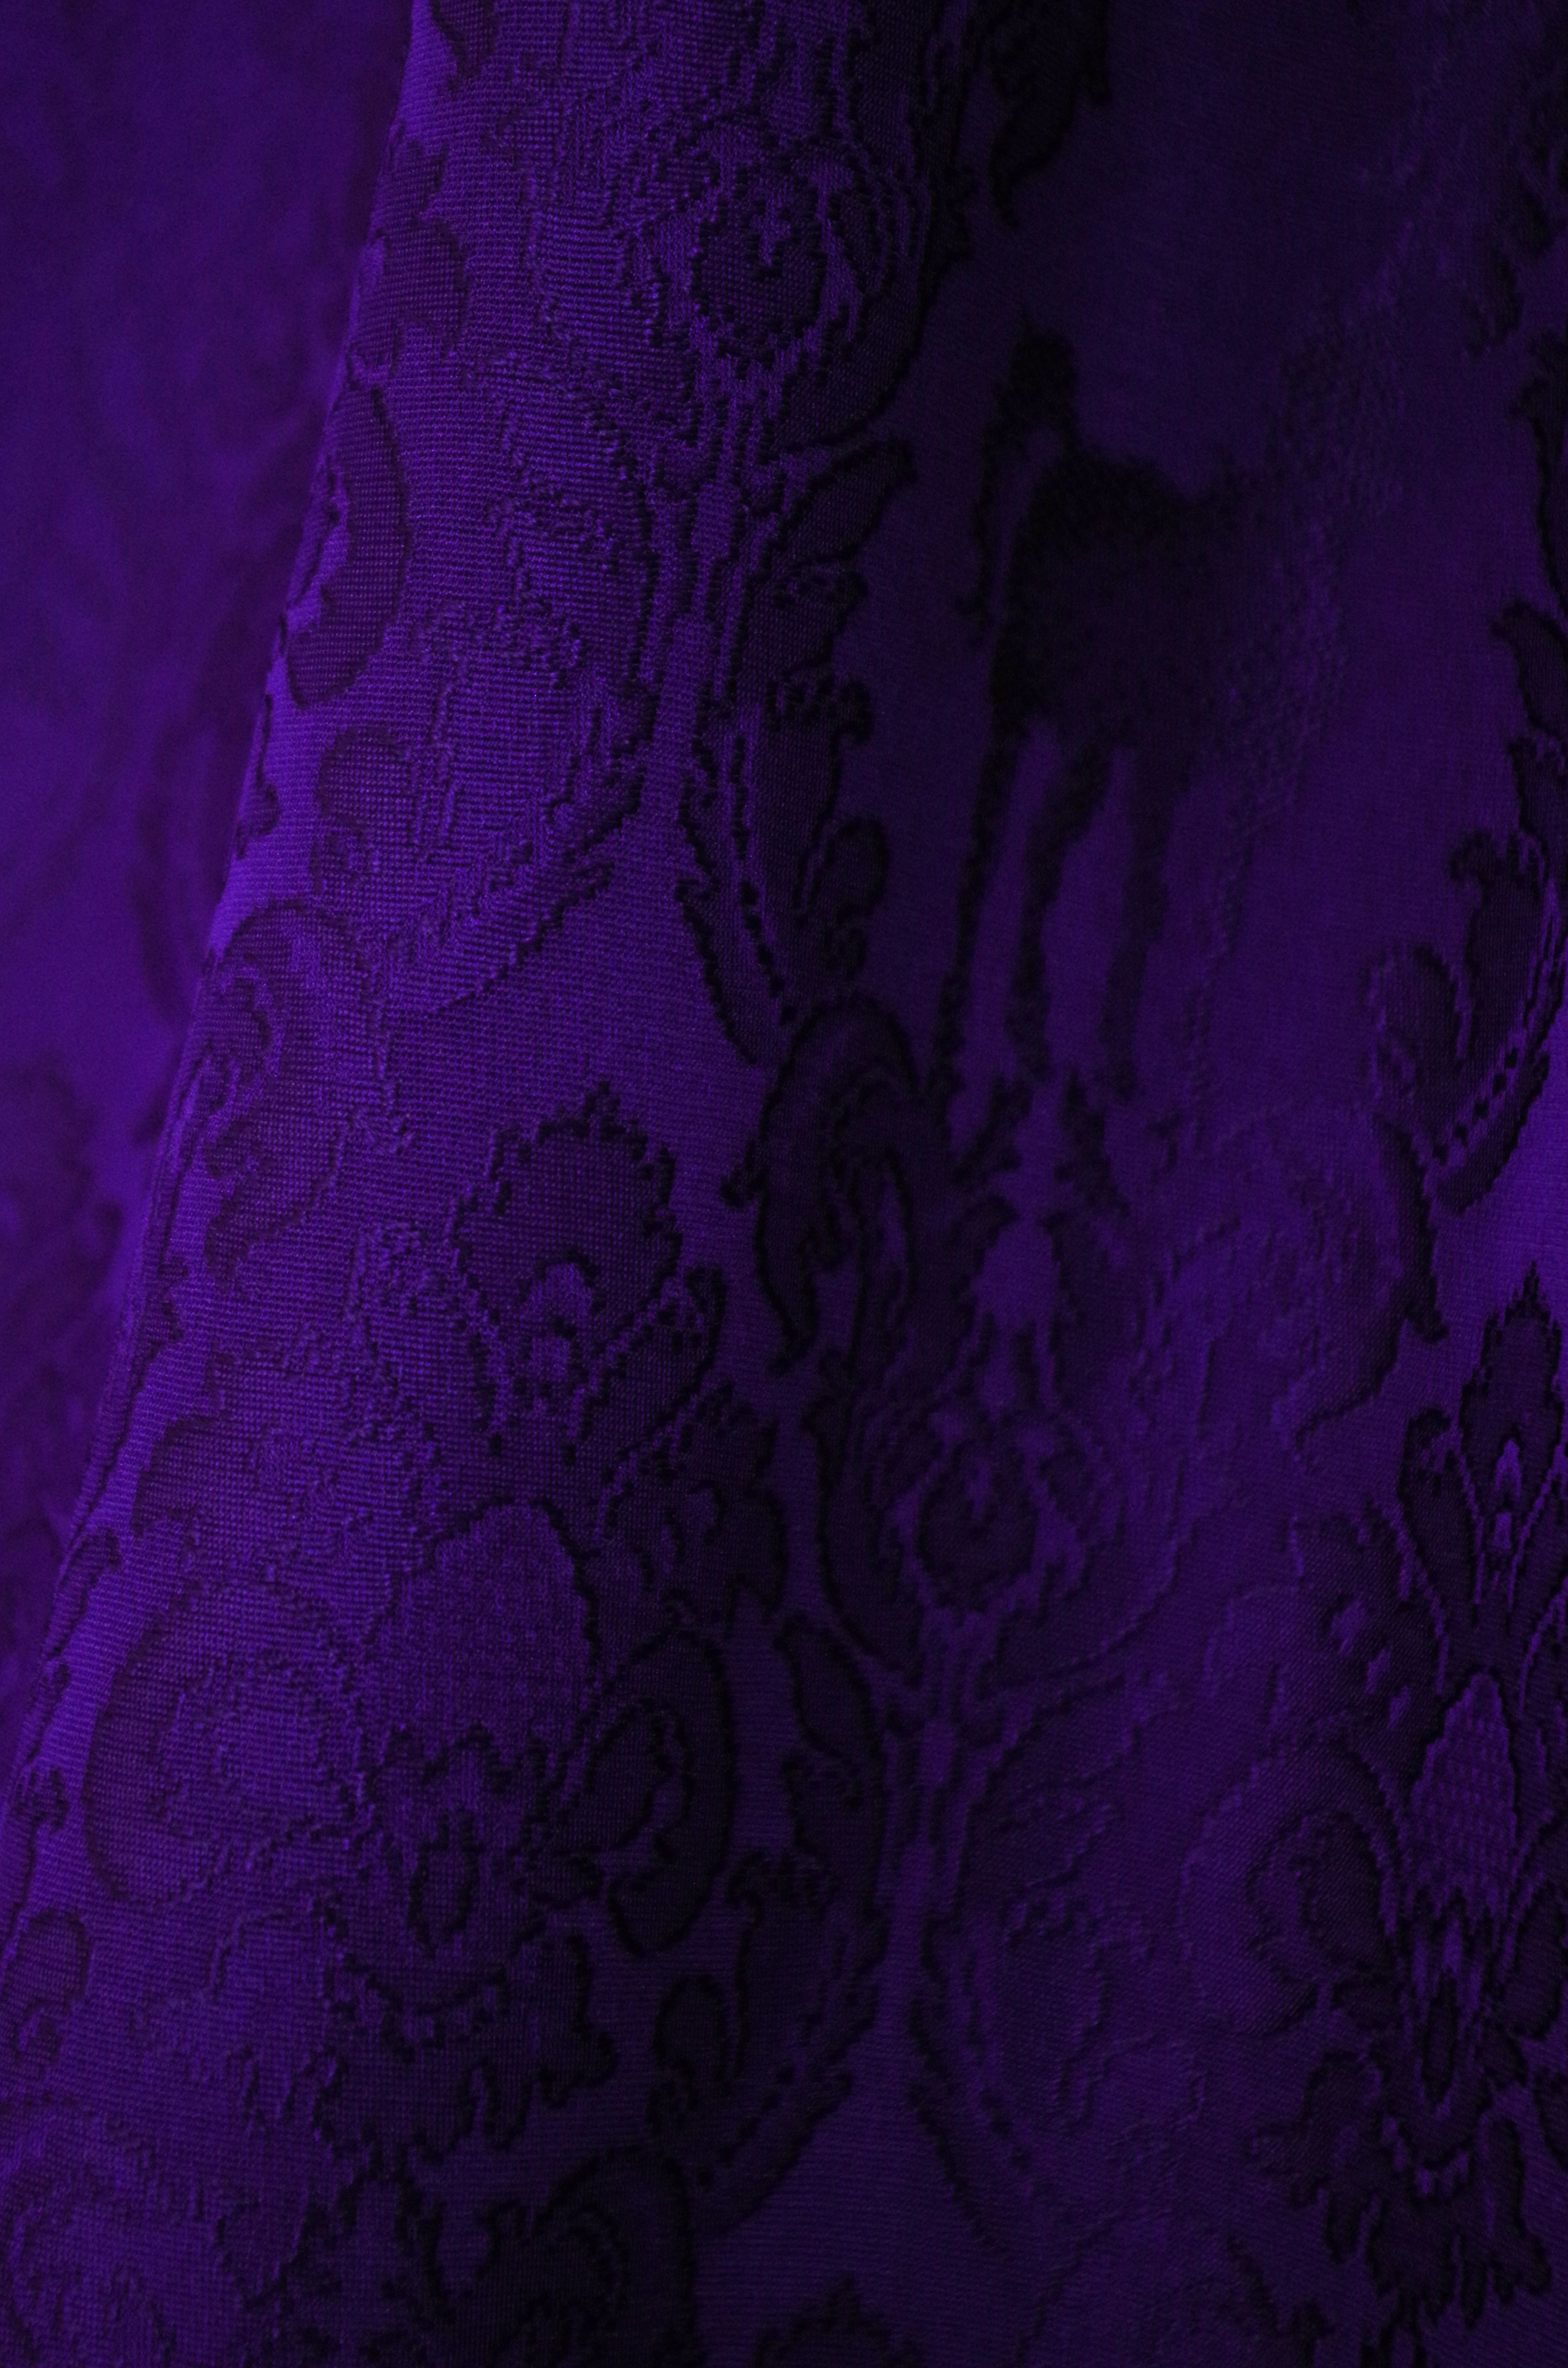 グラースオリジナル色無地 ユニコーンダマスク 今紫 いまむらさき 仕立て込 キモノグラース